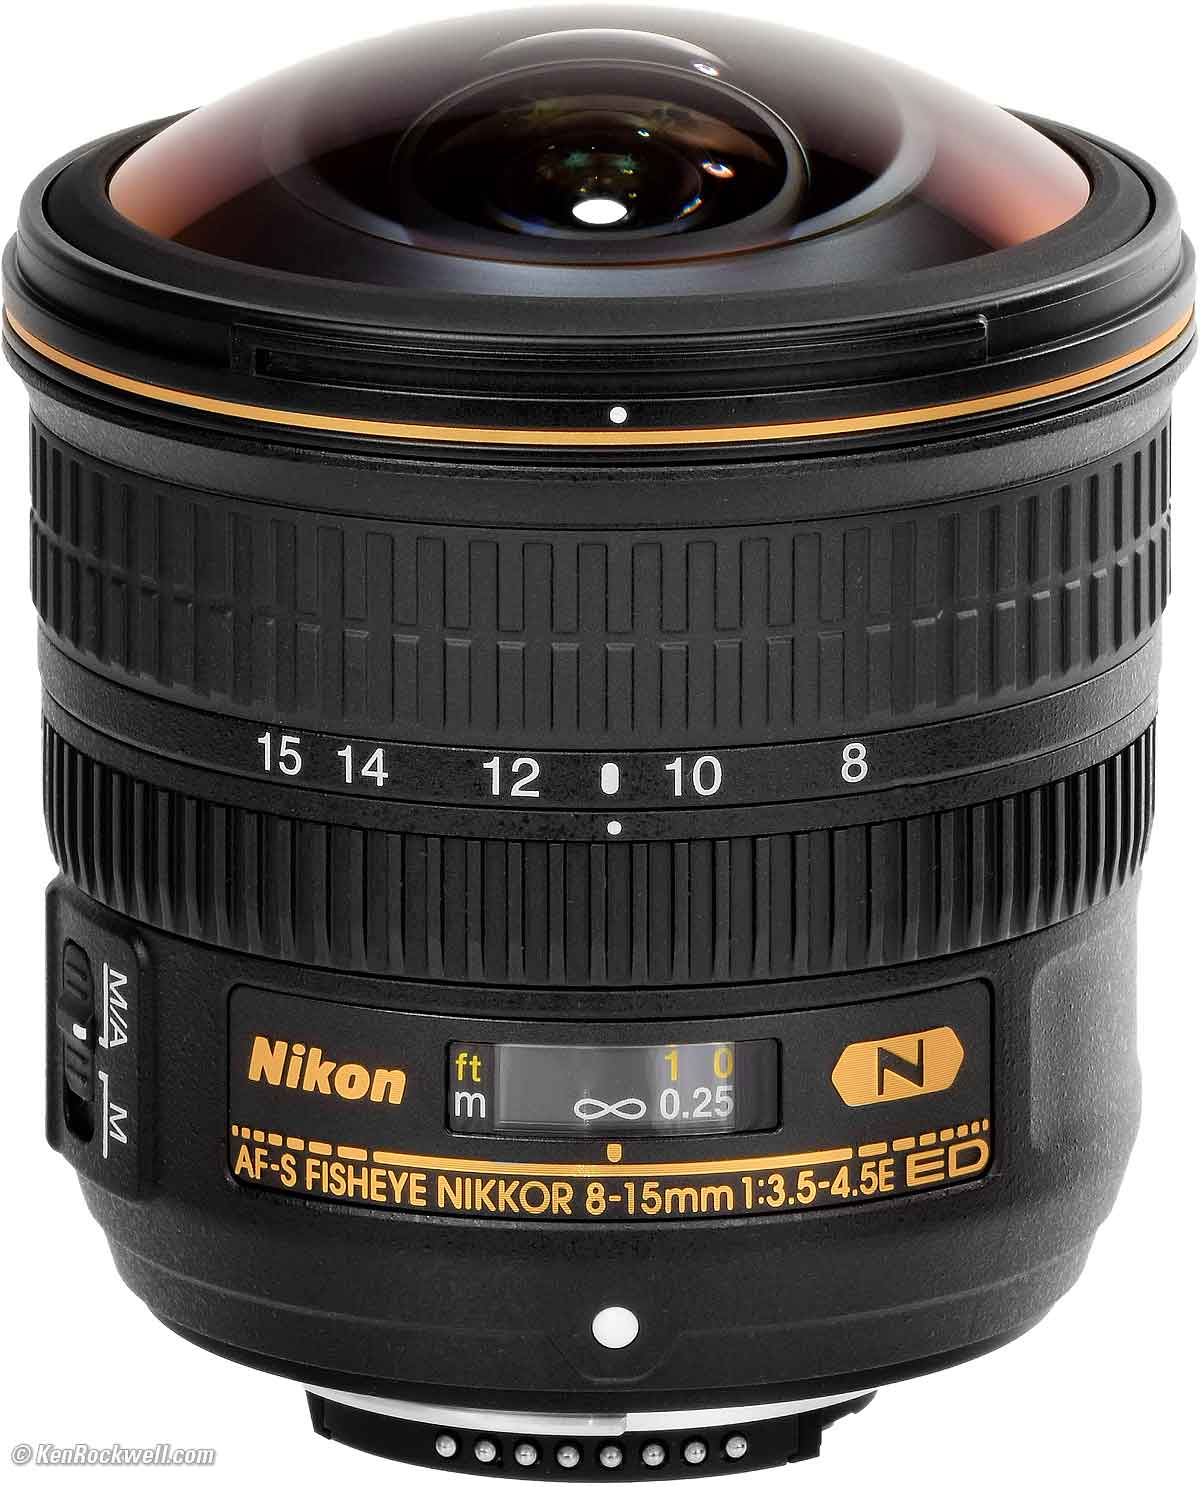 Nikon 8 15mm Fx Fisheye Review